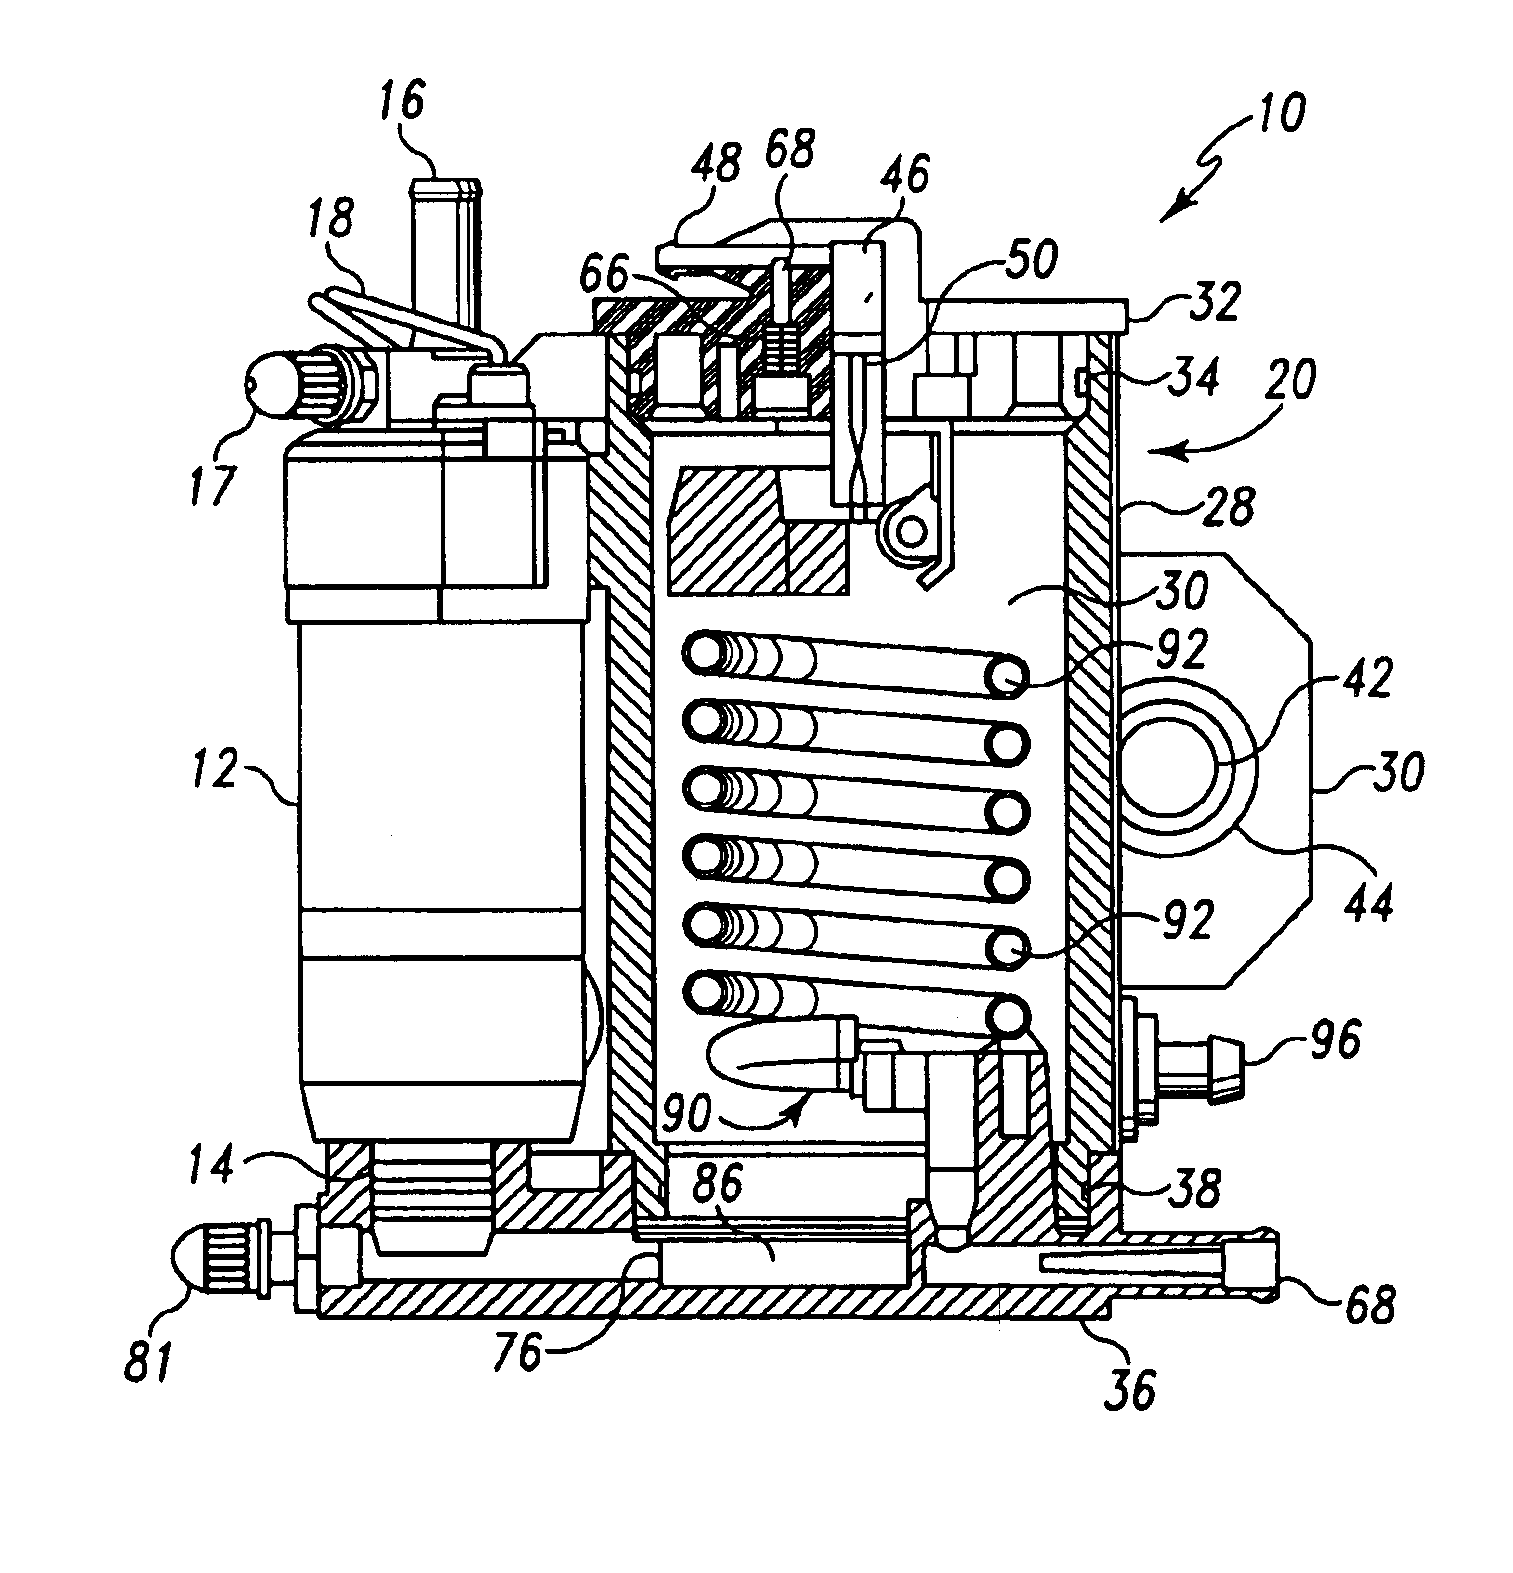 Fuel vapor separator for internal combustion engine